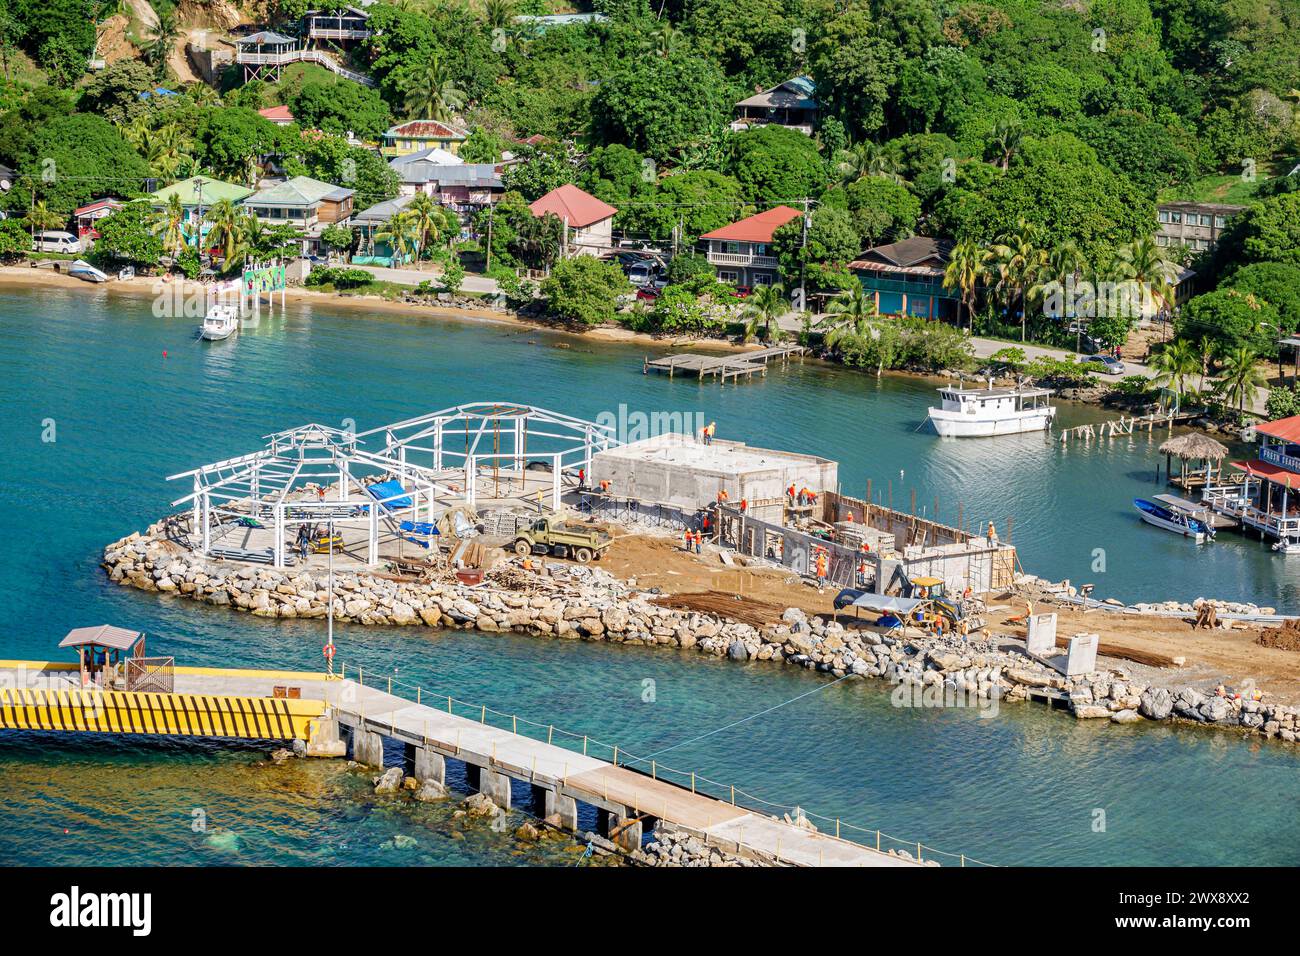 Port Roatan Honduras, isole della baia di Coxen Hole, nave da crociera Norwegian Joy Cruise Line, itinerario di 7 giorni del Mar dei Caraibi, in costruzione, cantiere edile, Foto Stock